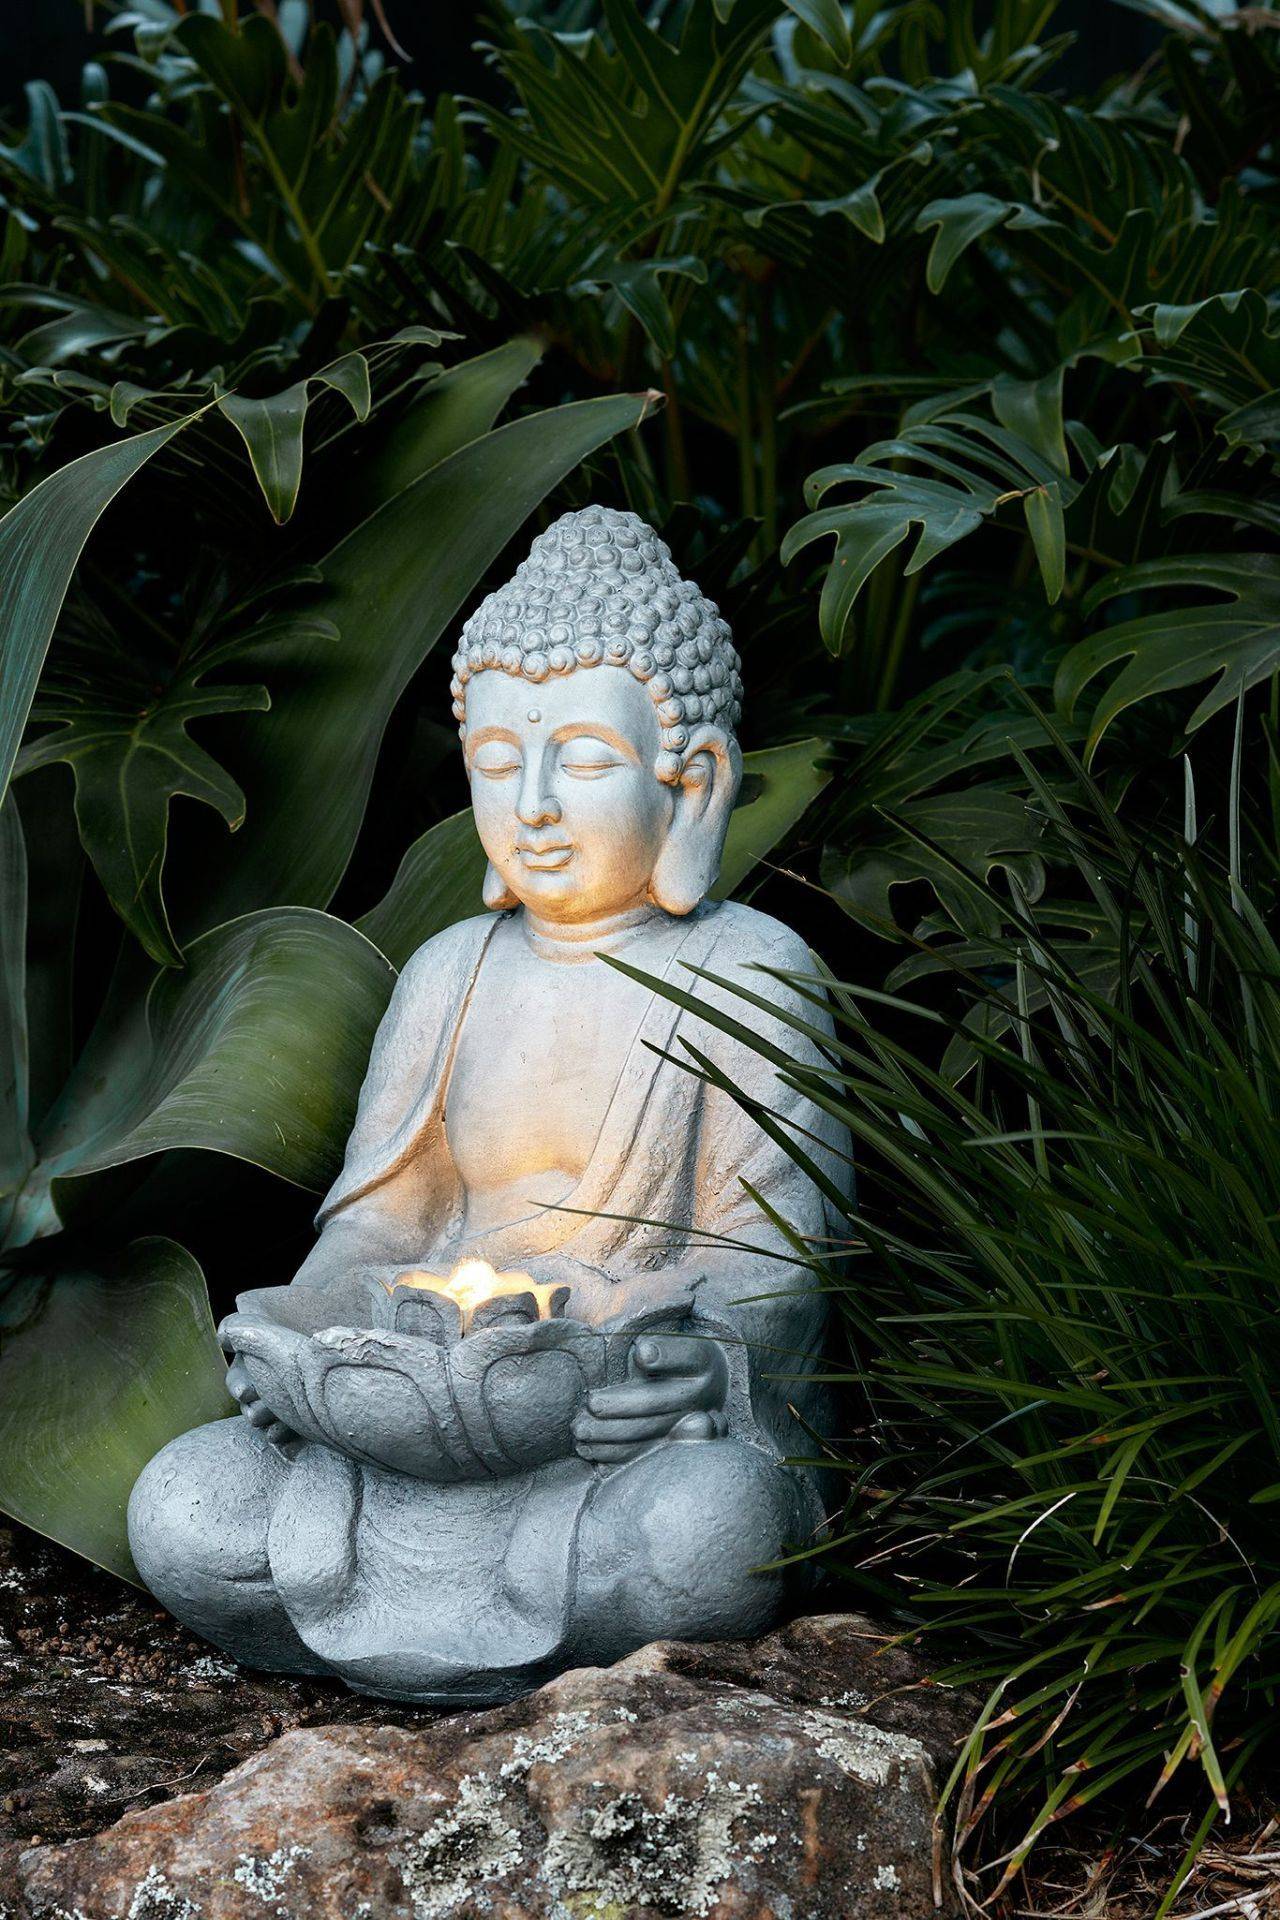 Another Miniature Buddha Garden Miniature Zen Garden